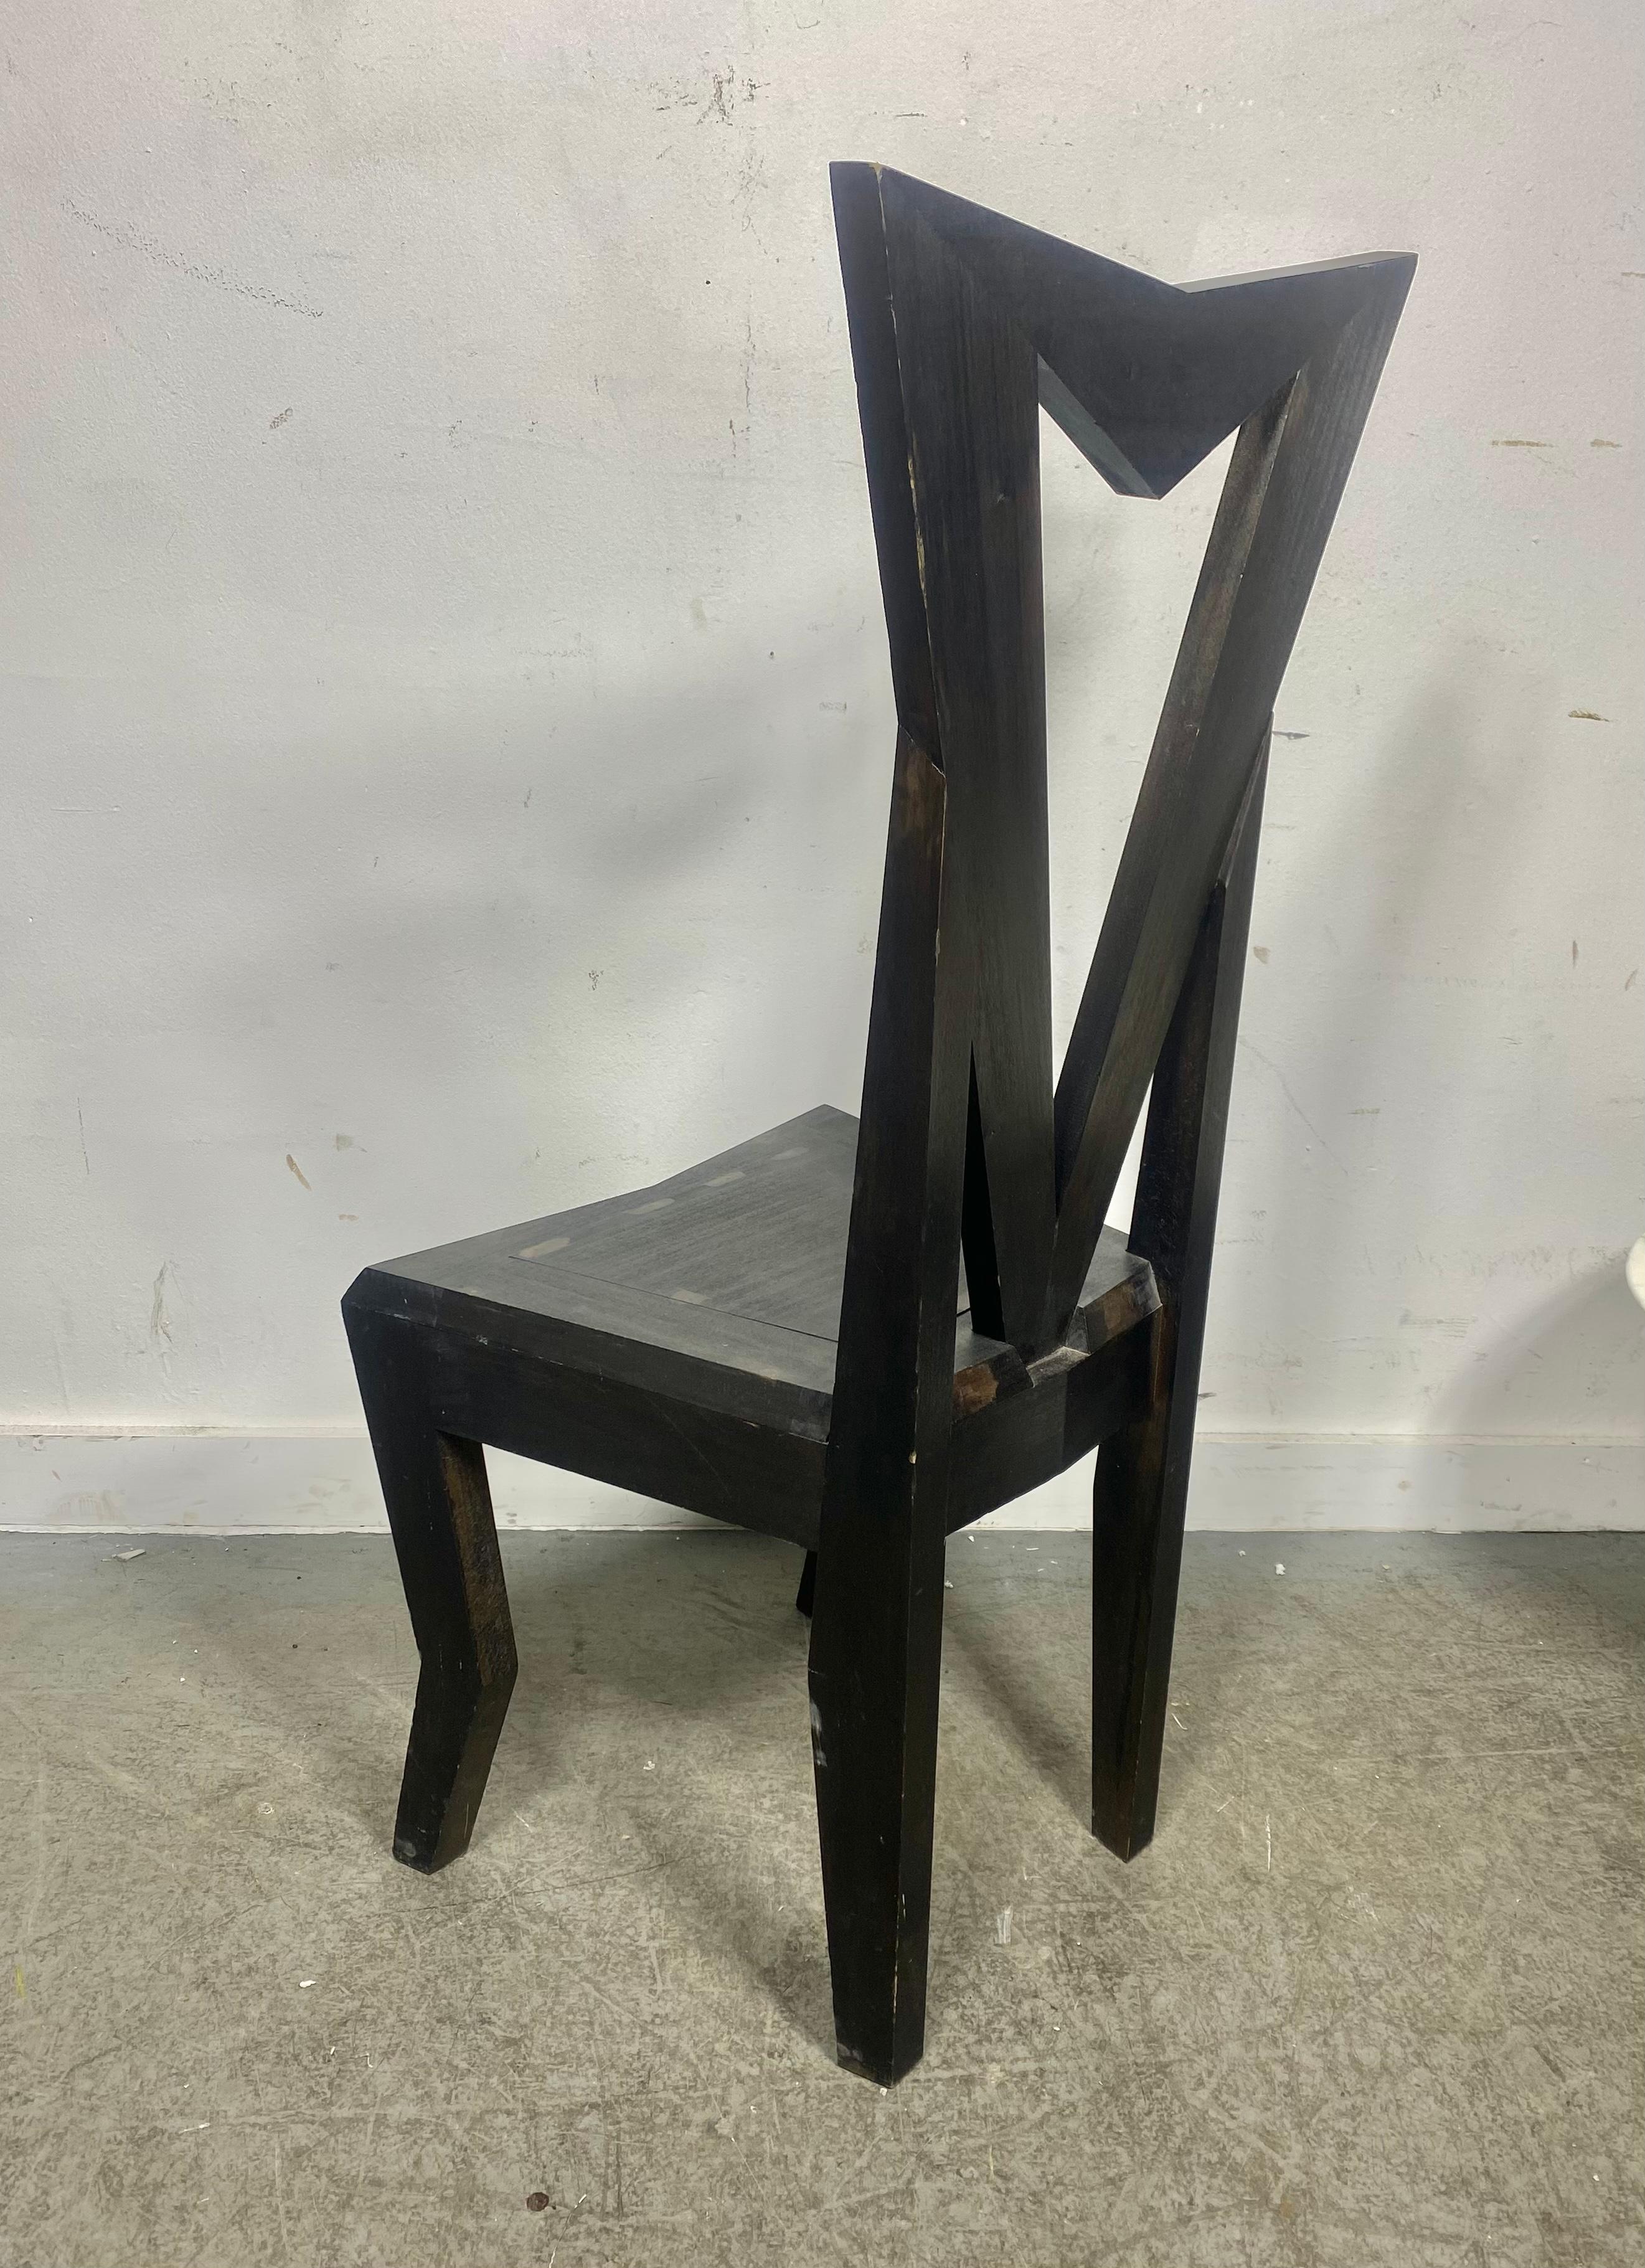 cubist chair